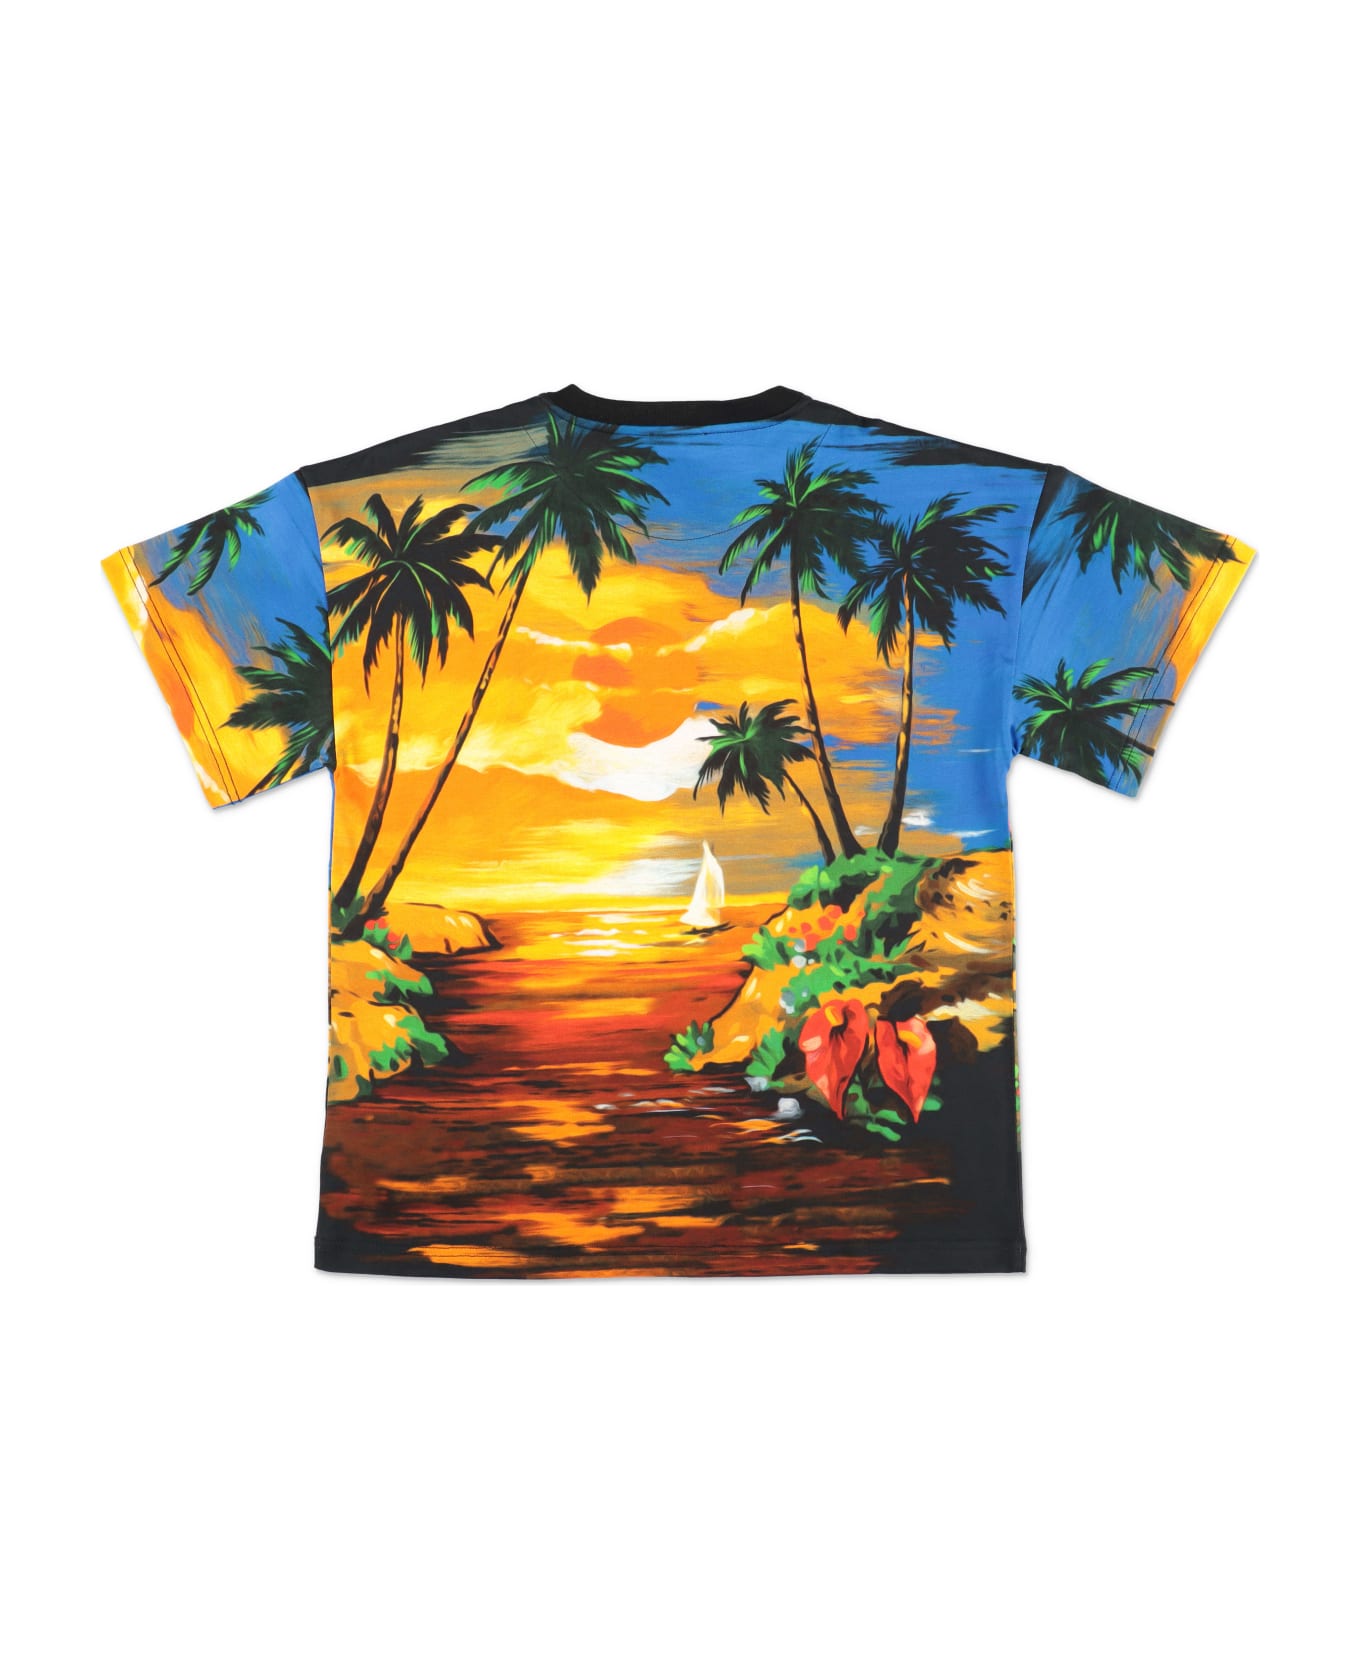 Dolce & Gabbana T-shirt Stampata In Tema Hawaiiin Jersey Di Cotone Bambino - Stampa